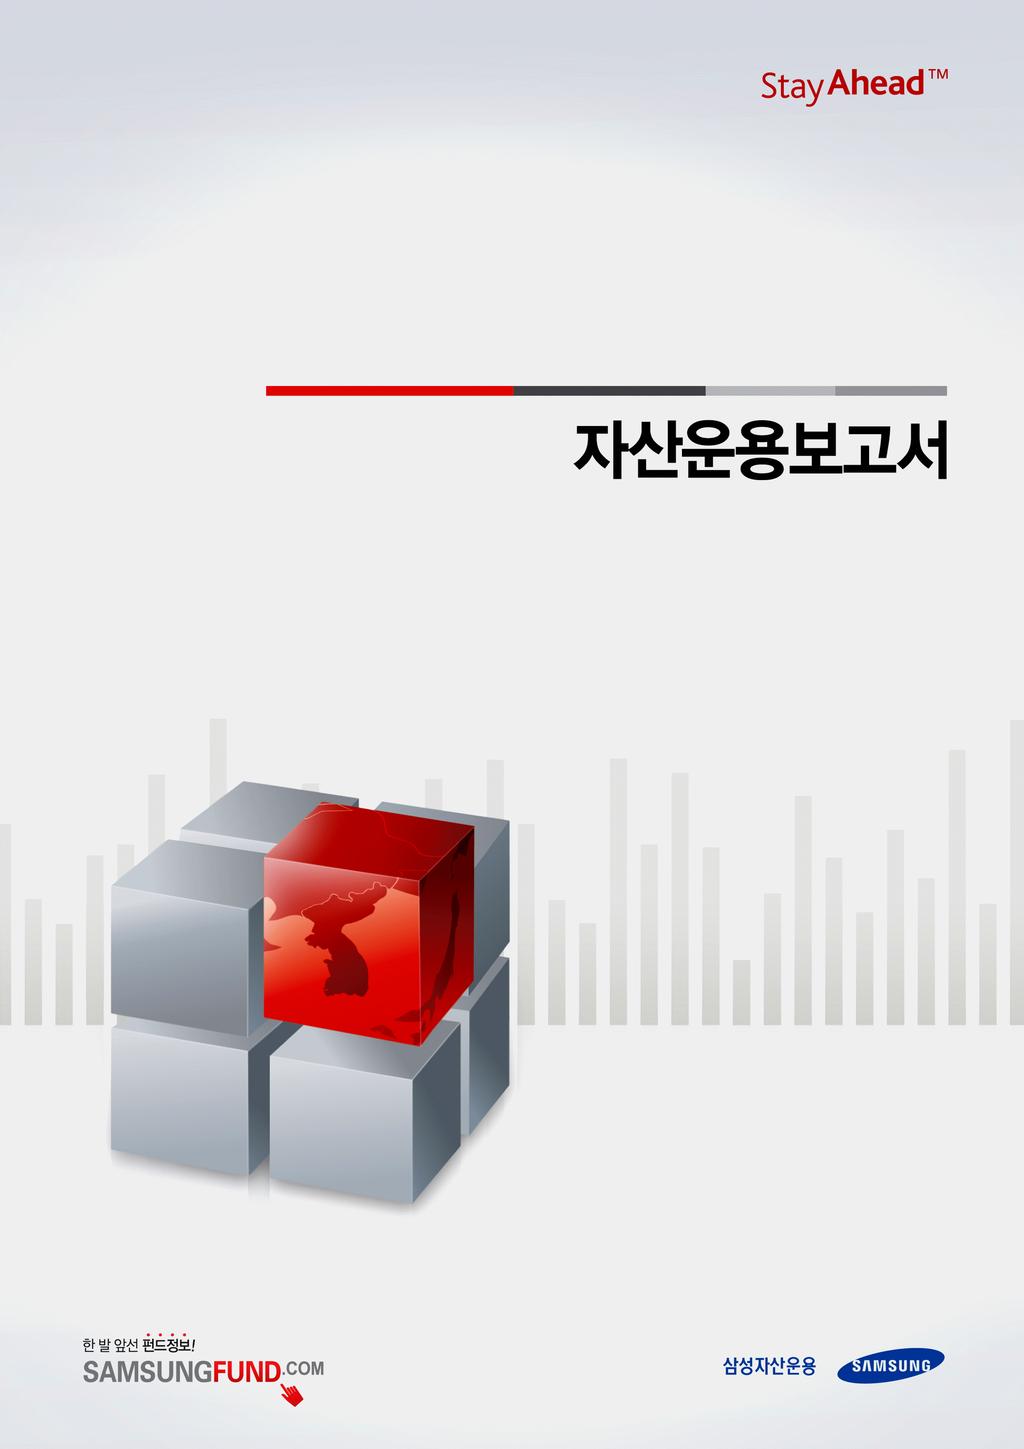 삼성퇴직연금액티브증권자 제1호[주식] (운용기간 : 2011.01.01 ~ 2011.03.